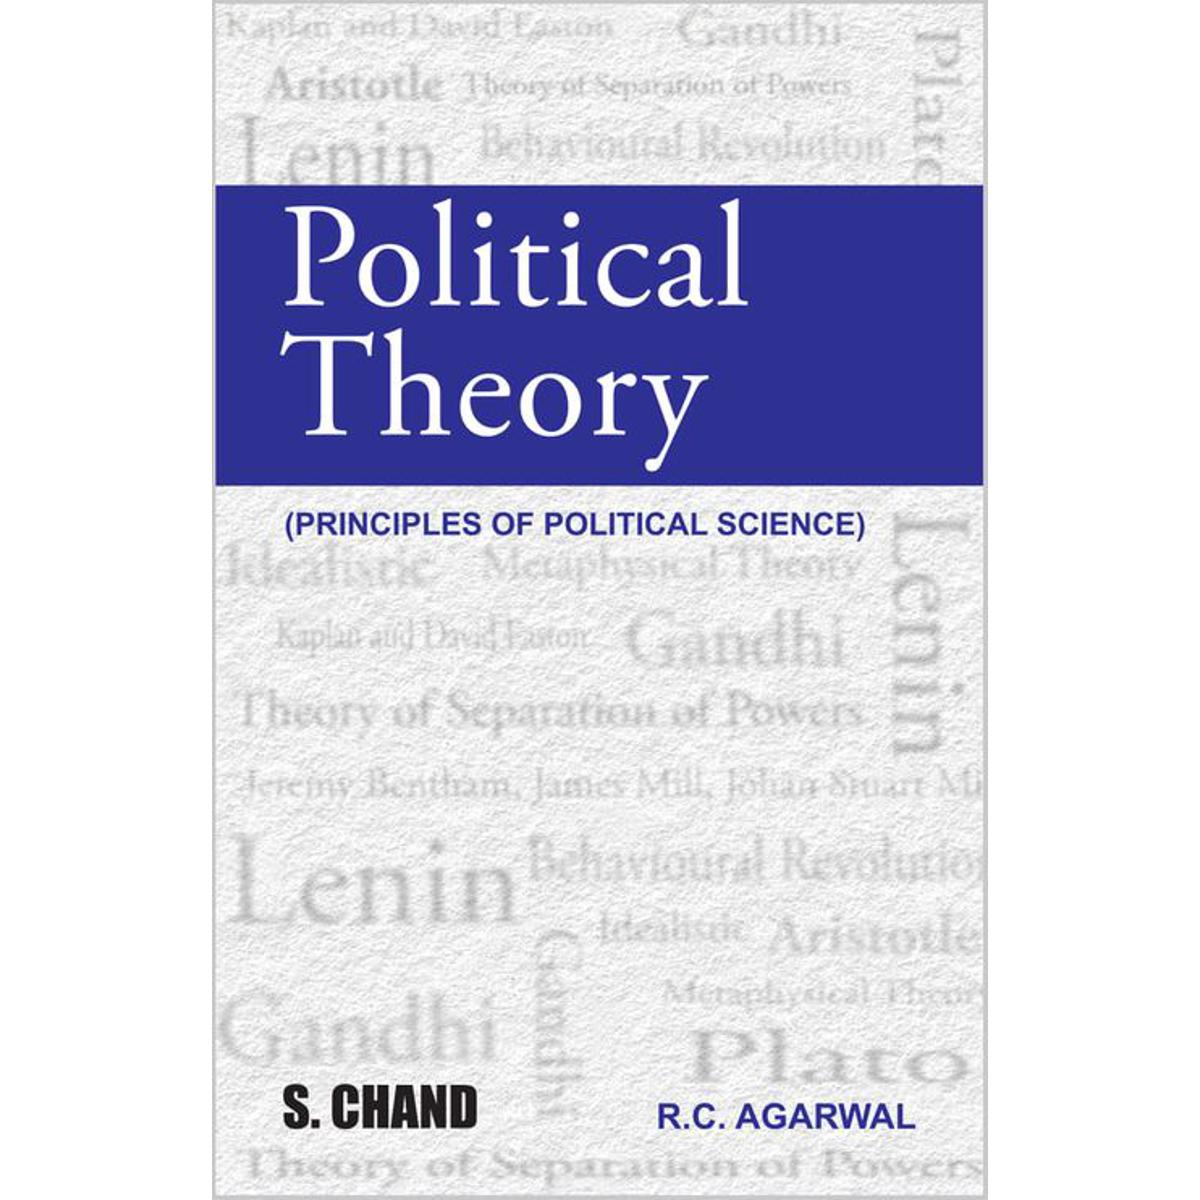 Political Theory (R.C Agarwal)